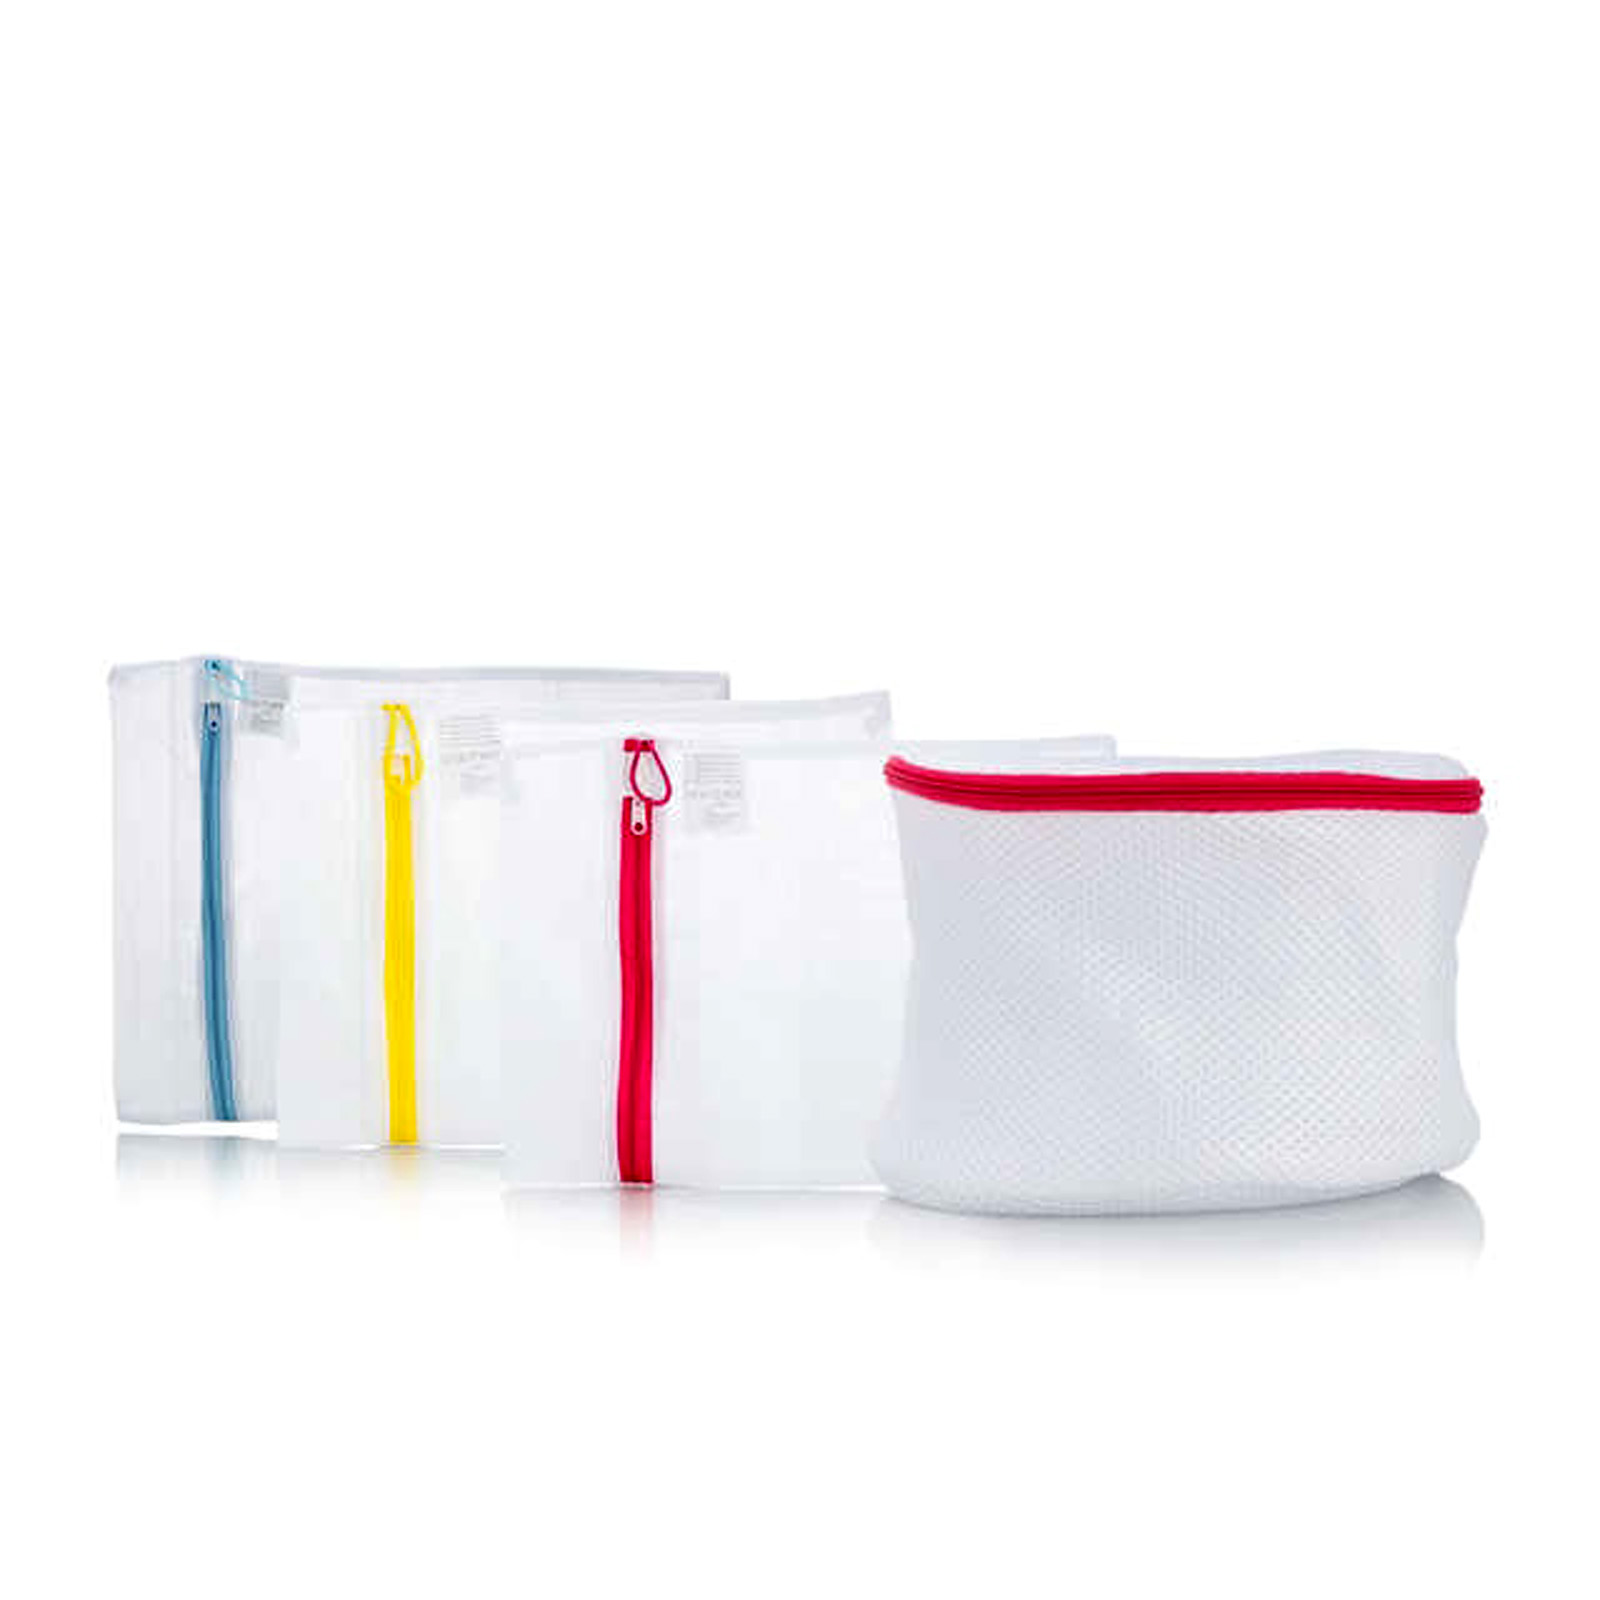 8 Wäschesack für Haltbarer Netz mit Reißverschlus Wäschebeutel für Blusen BHS Strumpfwaren Unterwäsche Dessous und Babykleidung Wäschenetz für Waschmaschine